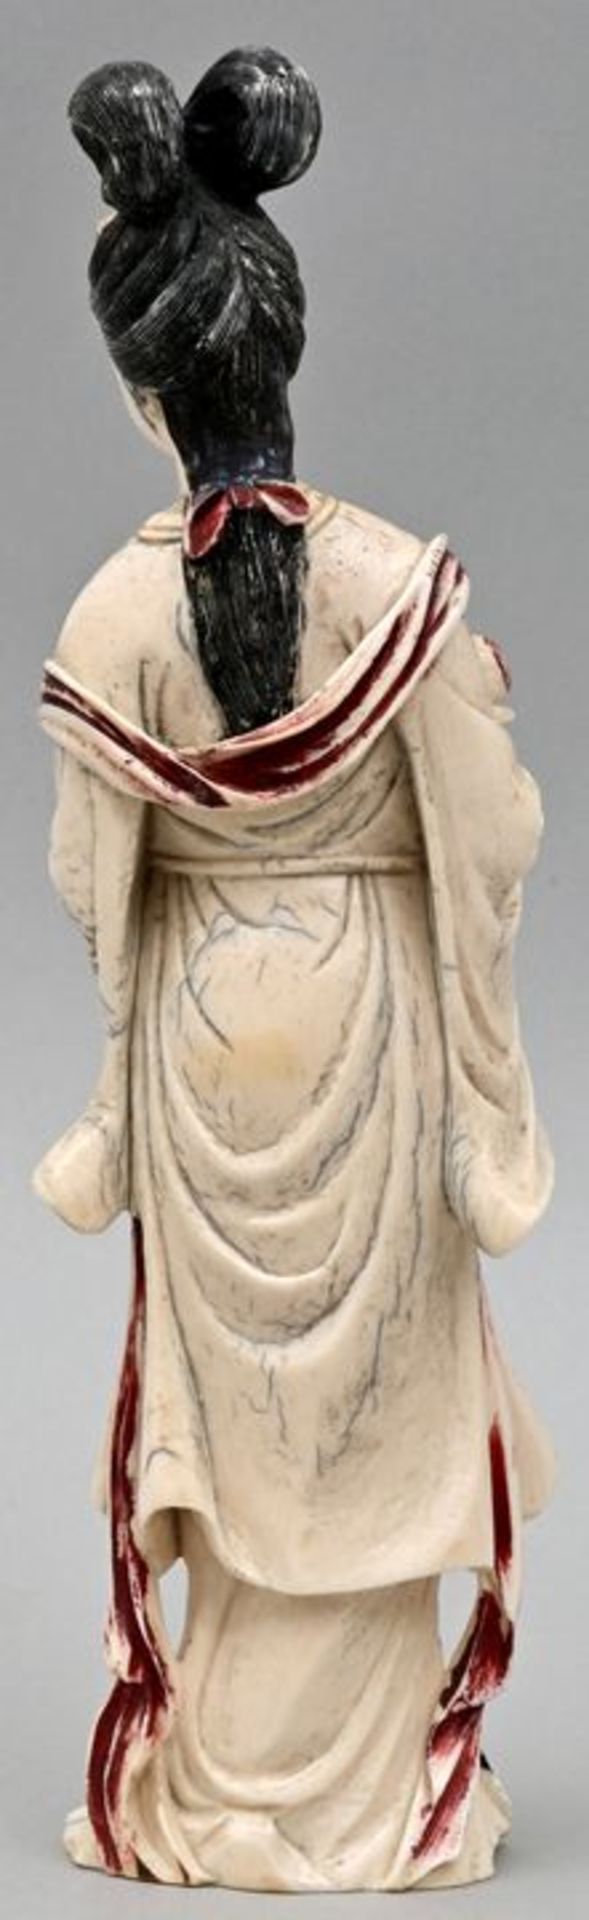 Elfenbeinfigur / Ivory figure - Image 2 of 3